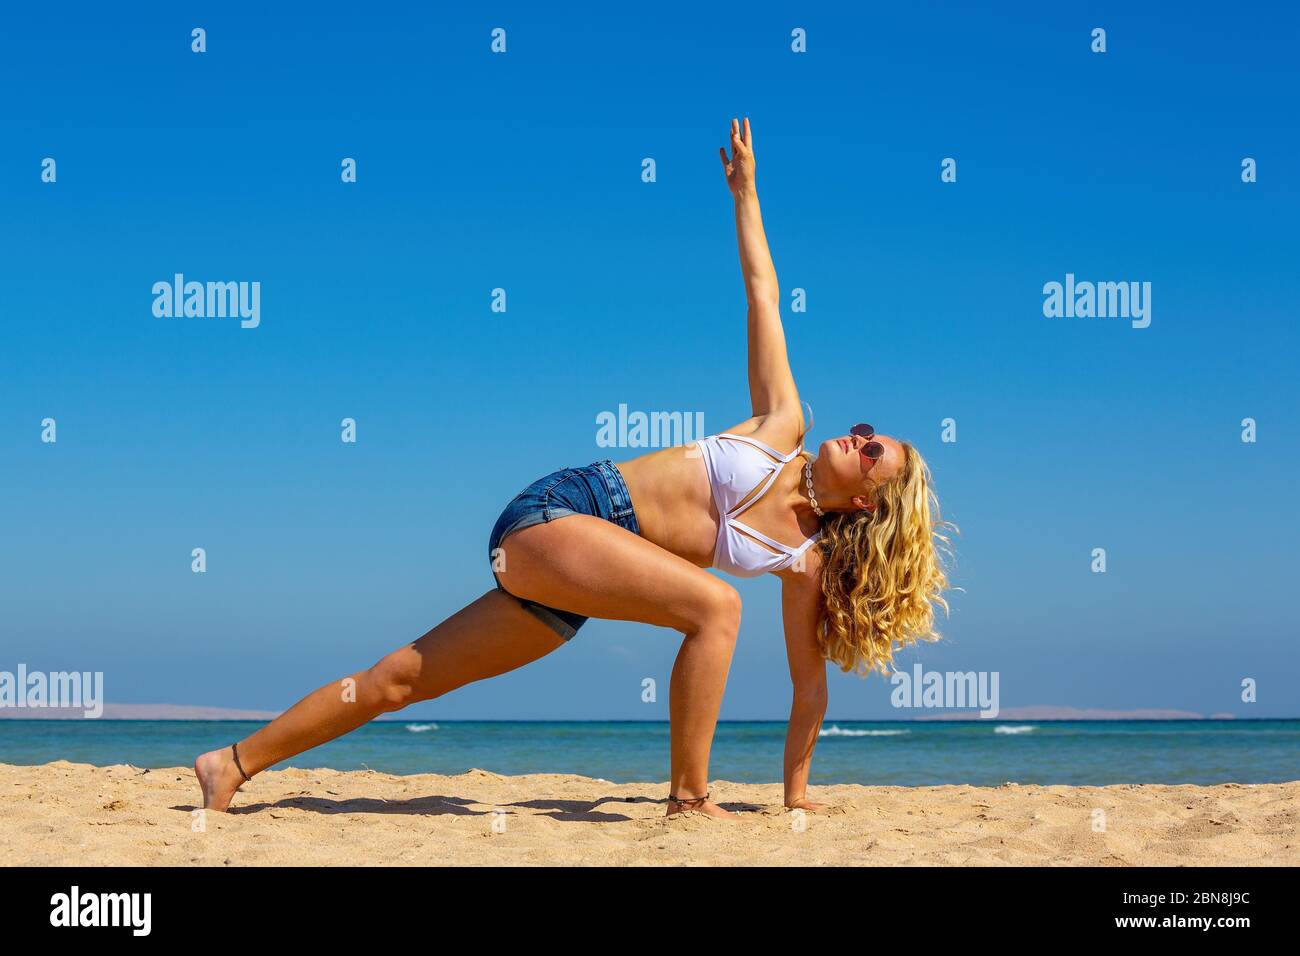 Junge blonde holländerin trainiert Yoga Pose am Strand in der Nähe von Meer Stockfoto